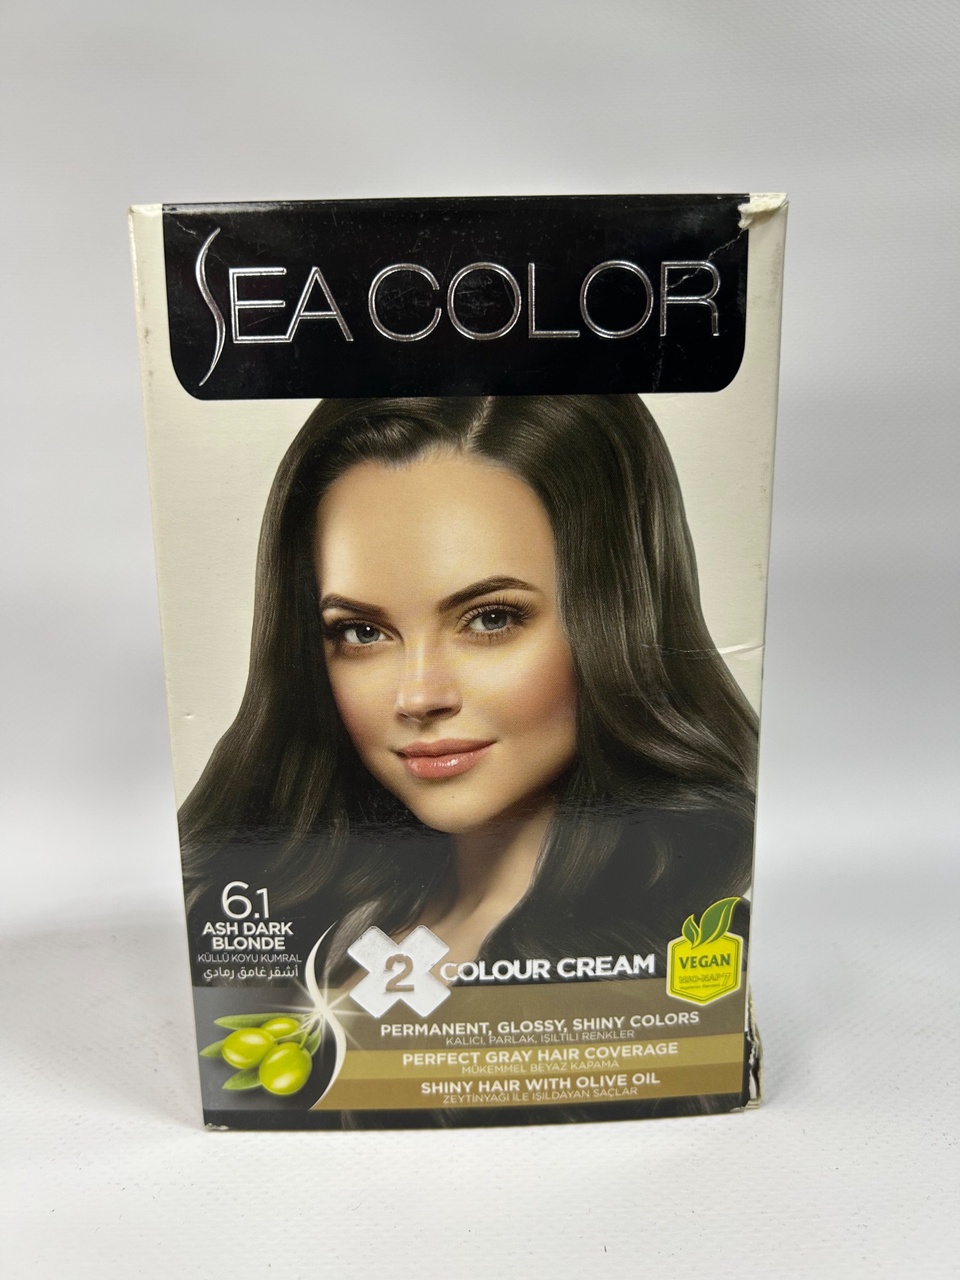 Sea Color 6.1 Краска д/волос «Пепельно темно-русый» - 300 ₽, заказать онлайн.